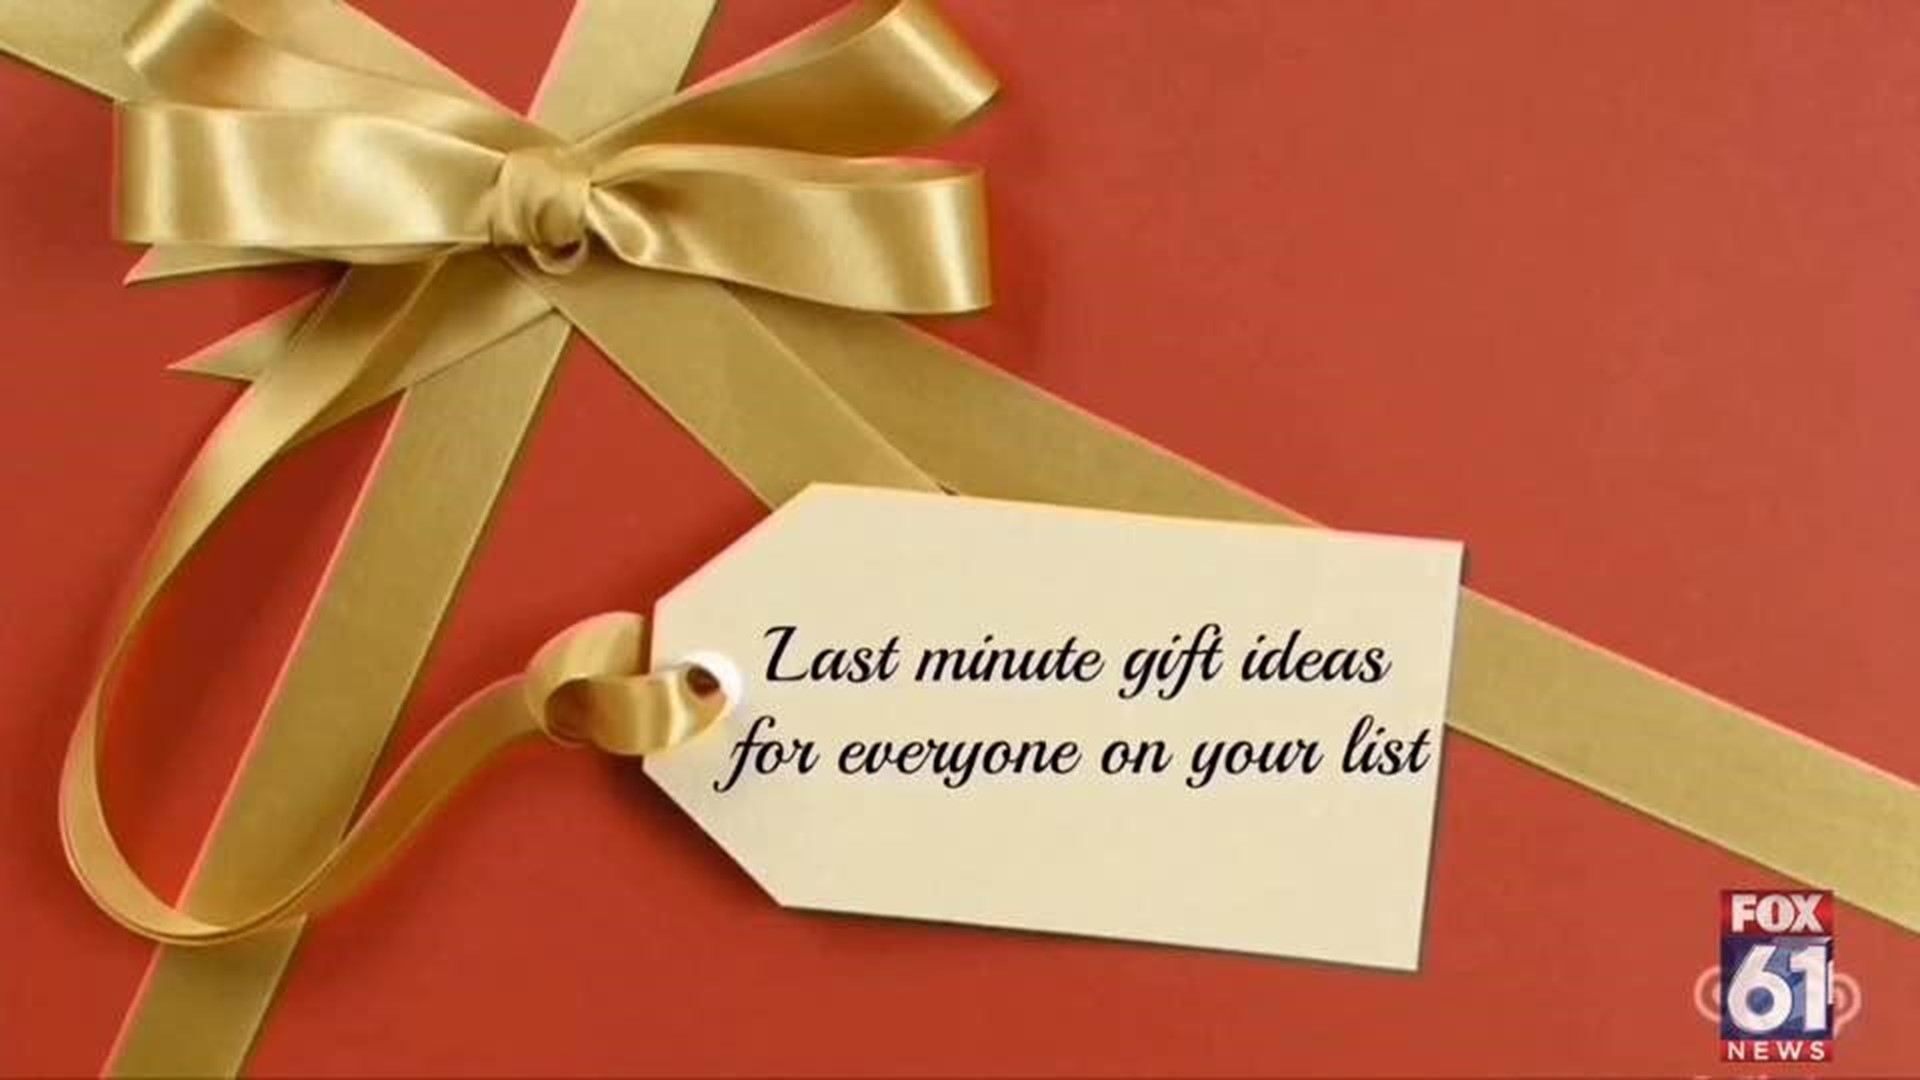 Last minute gift ideas